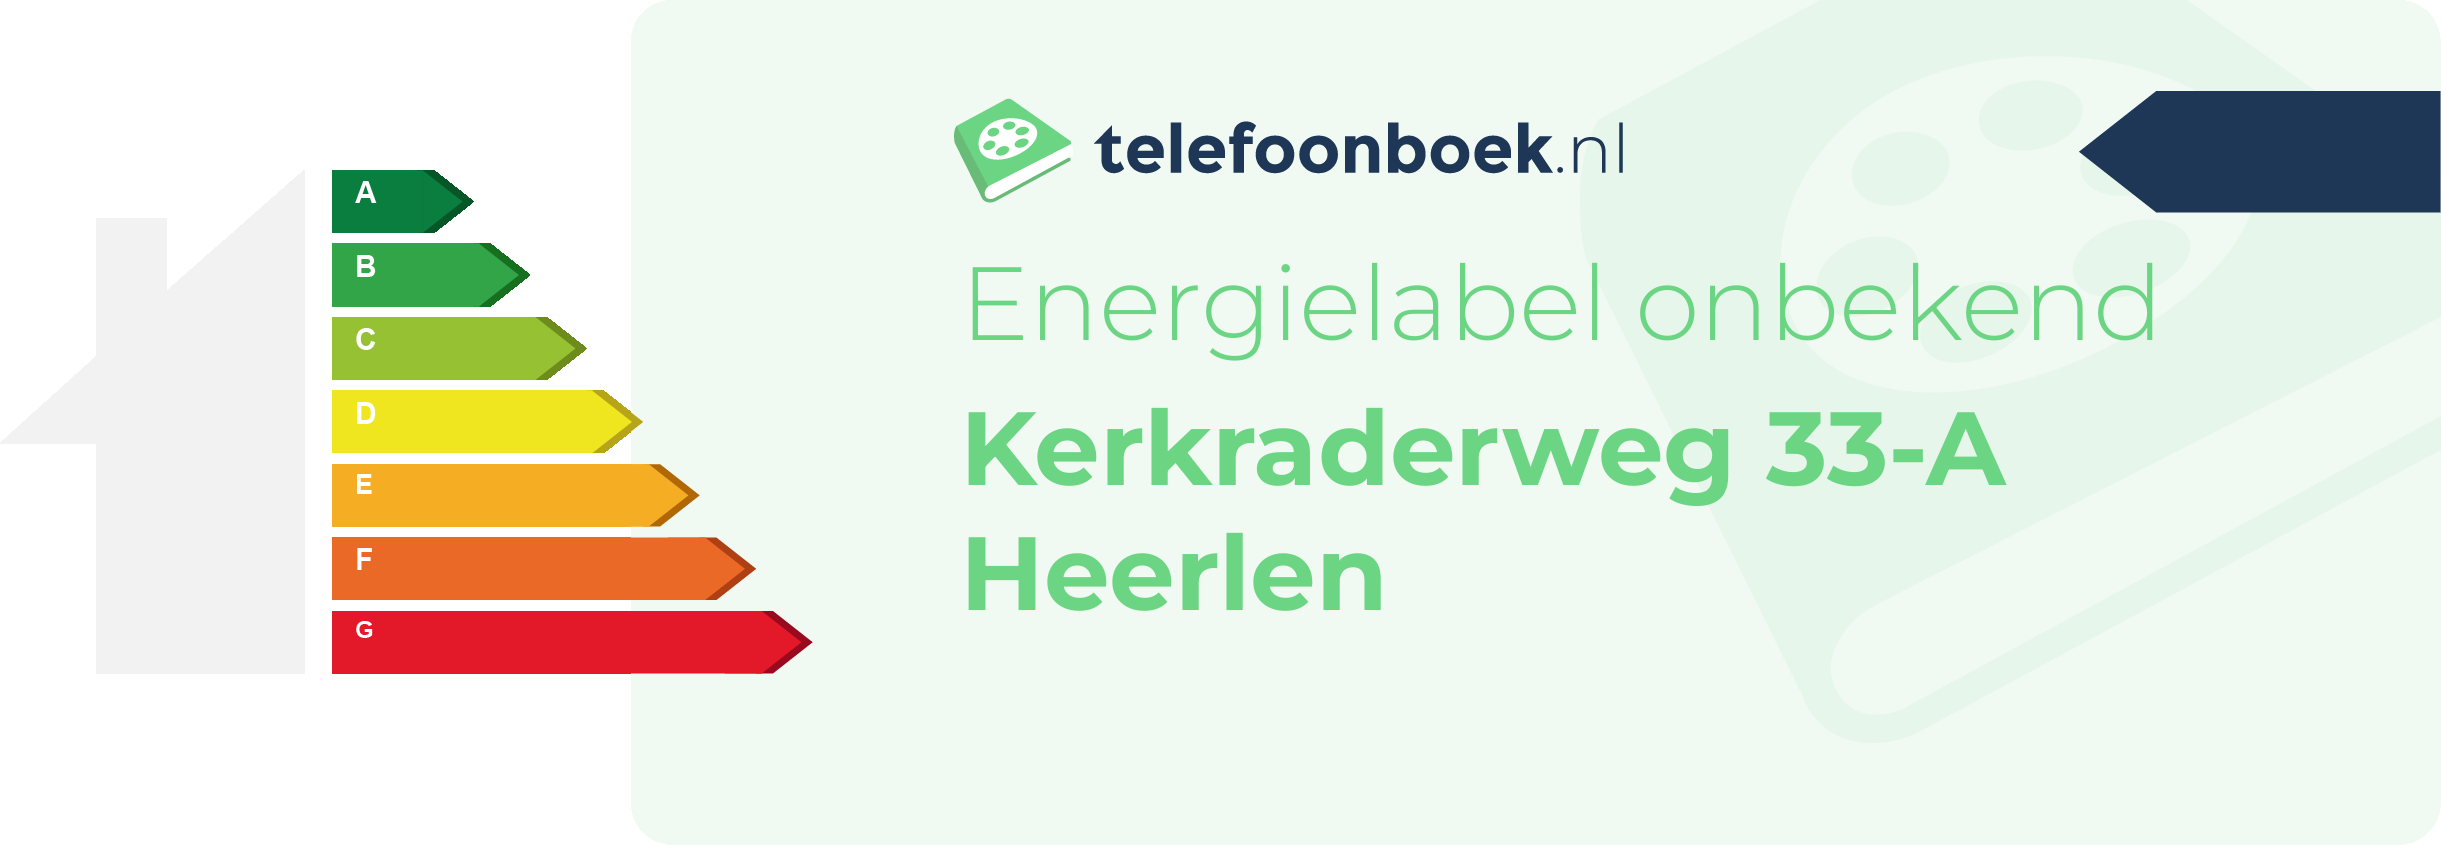 Energielabel Kerkraderweg 33-A Heerlen